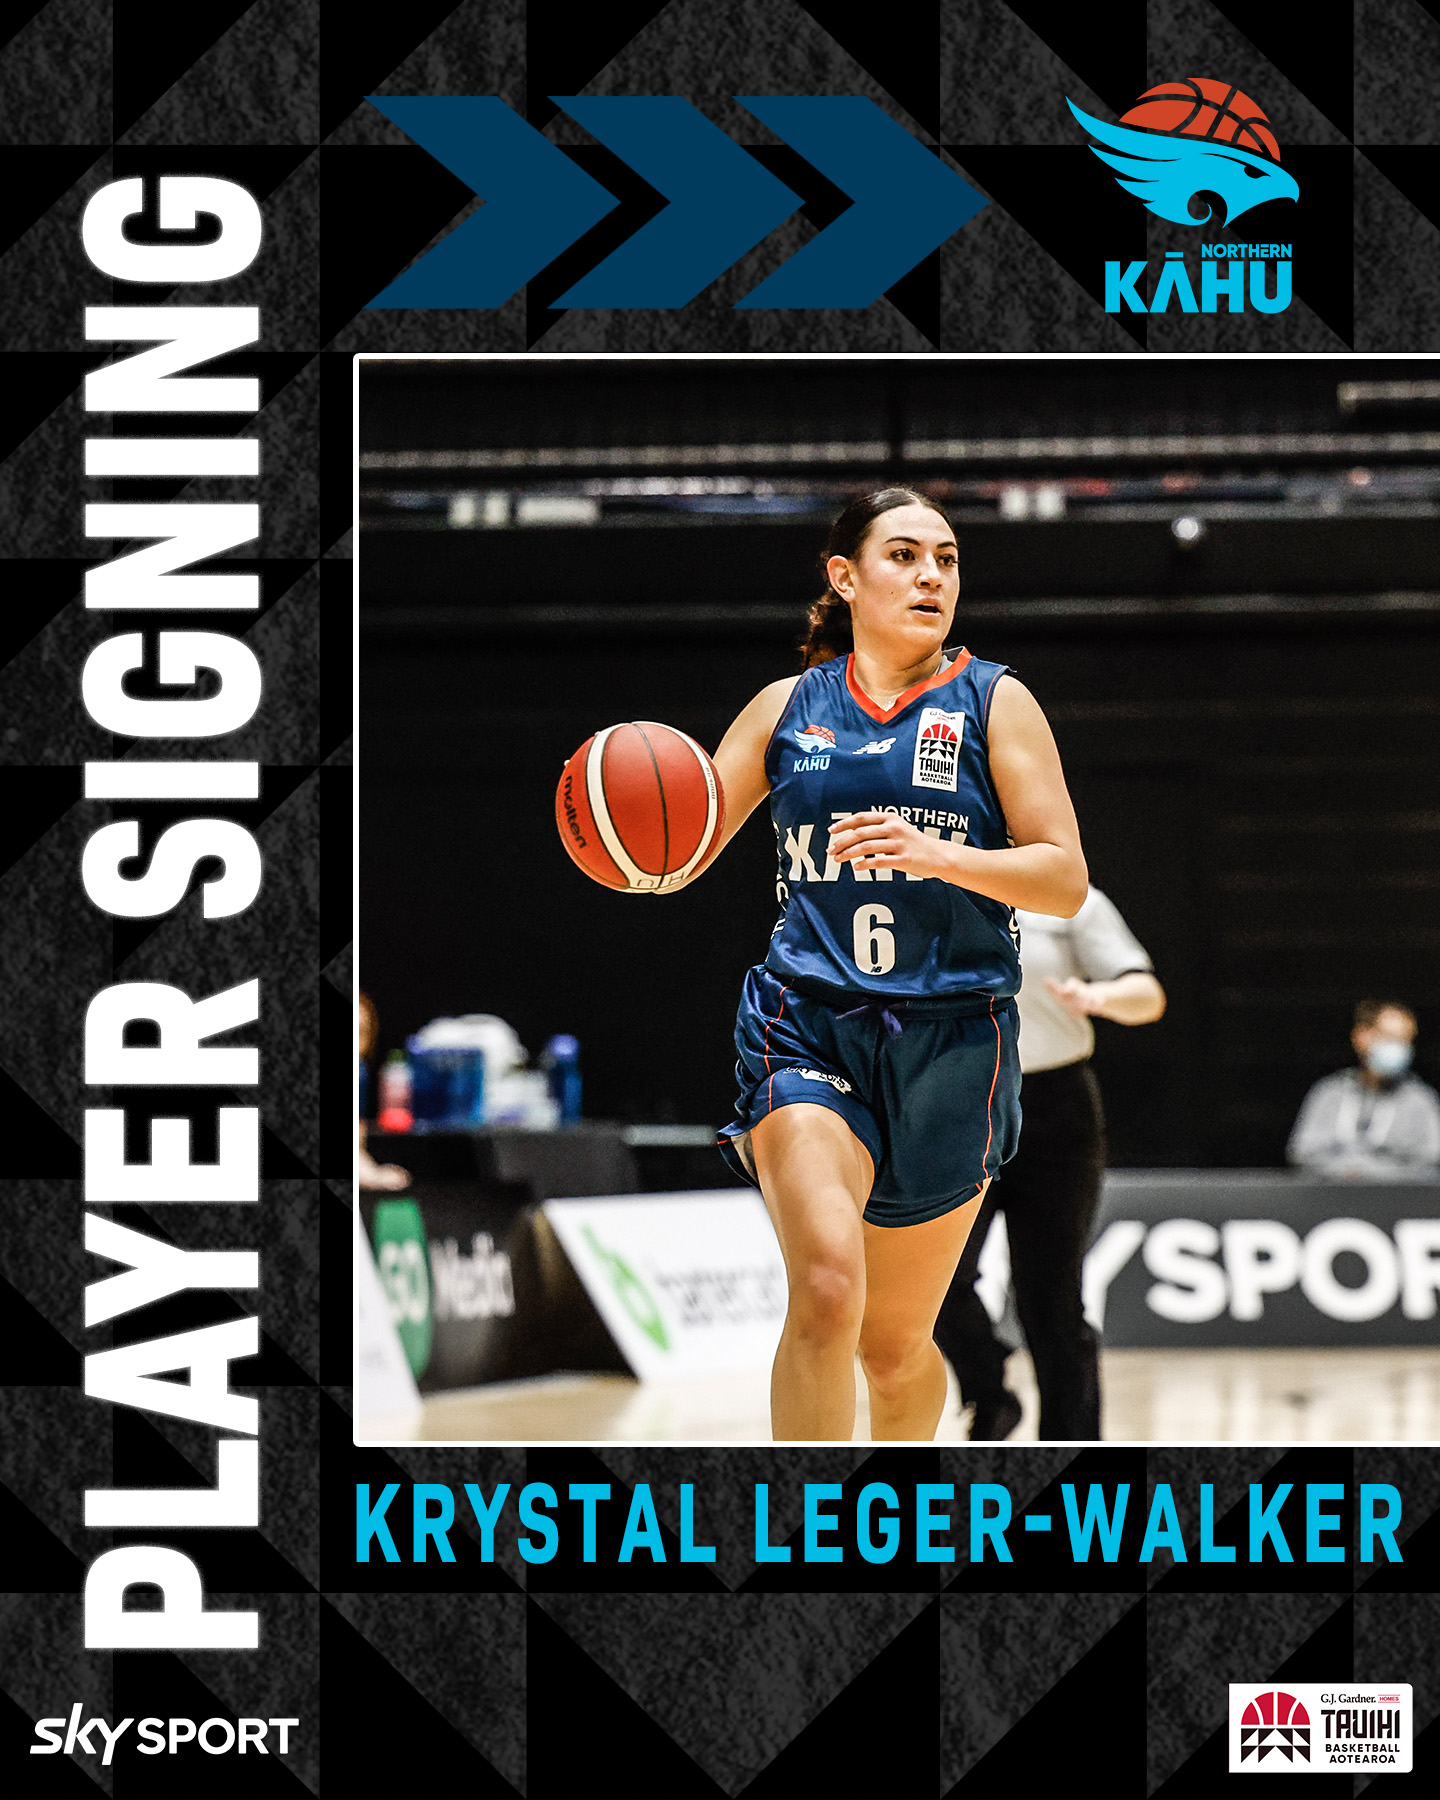 Krystal Leger-Walker